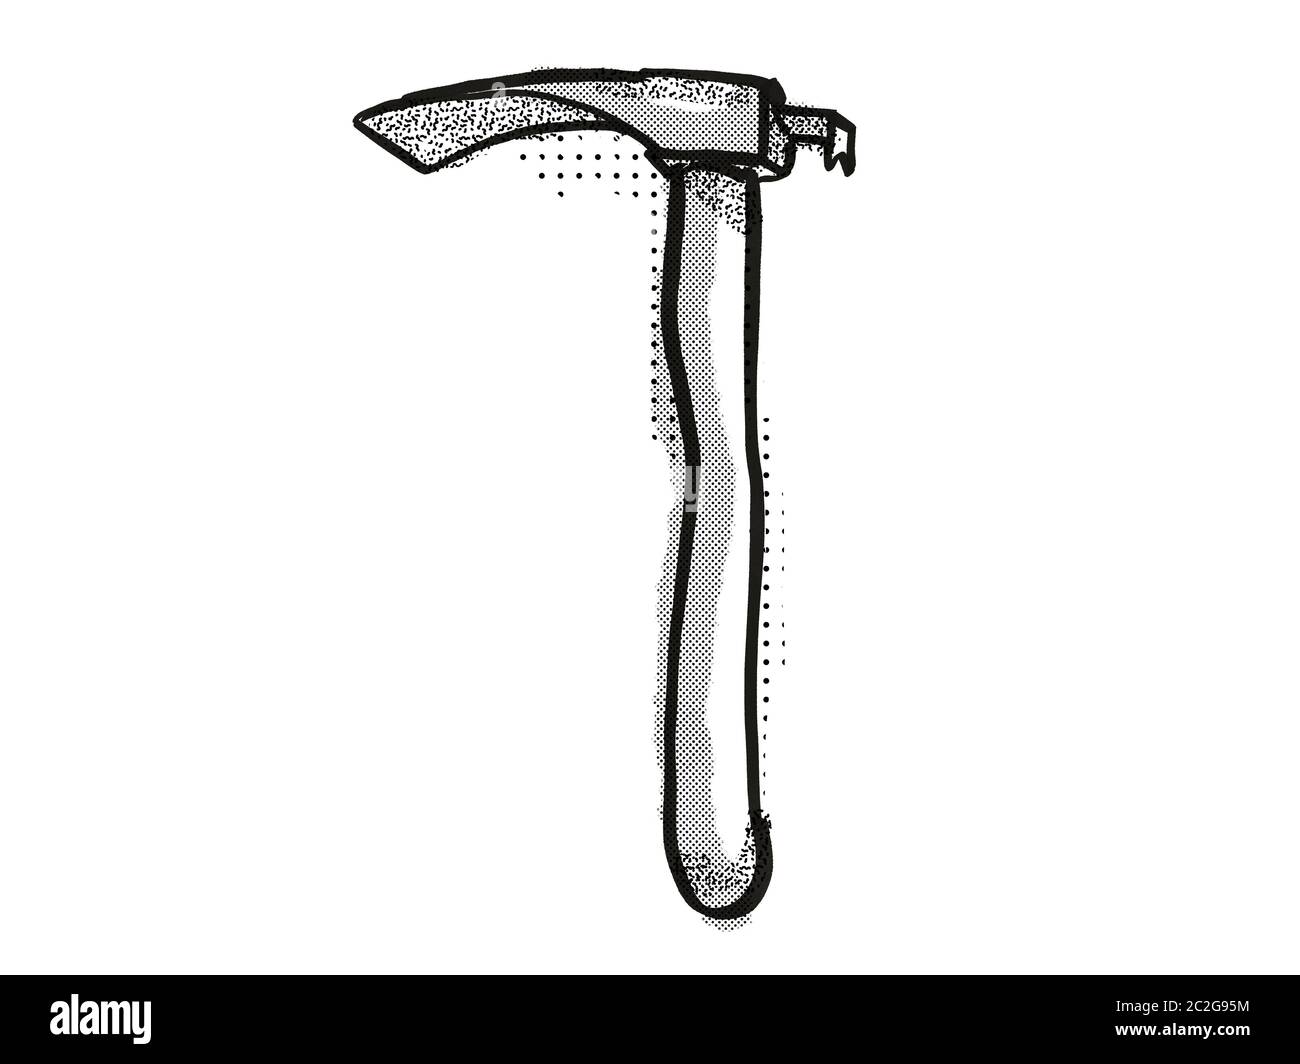 Retro cartoon style dessin d'une herminette , un outil à main bois isolé  sur fond blanc en noir et blanc Photo Stock - Alamy